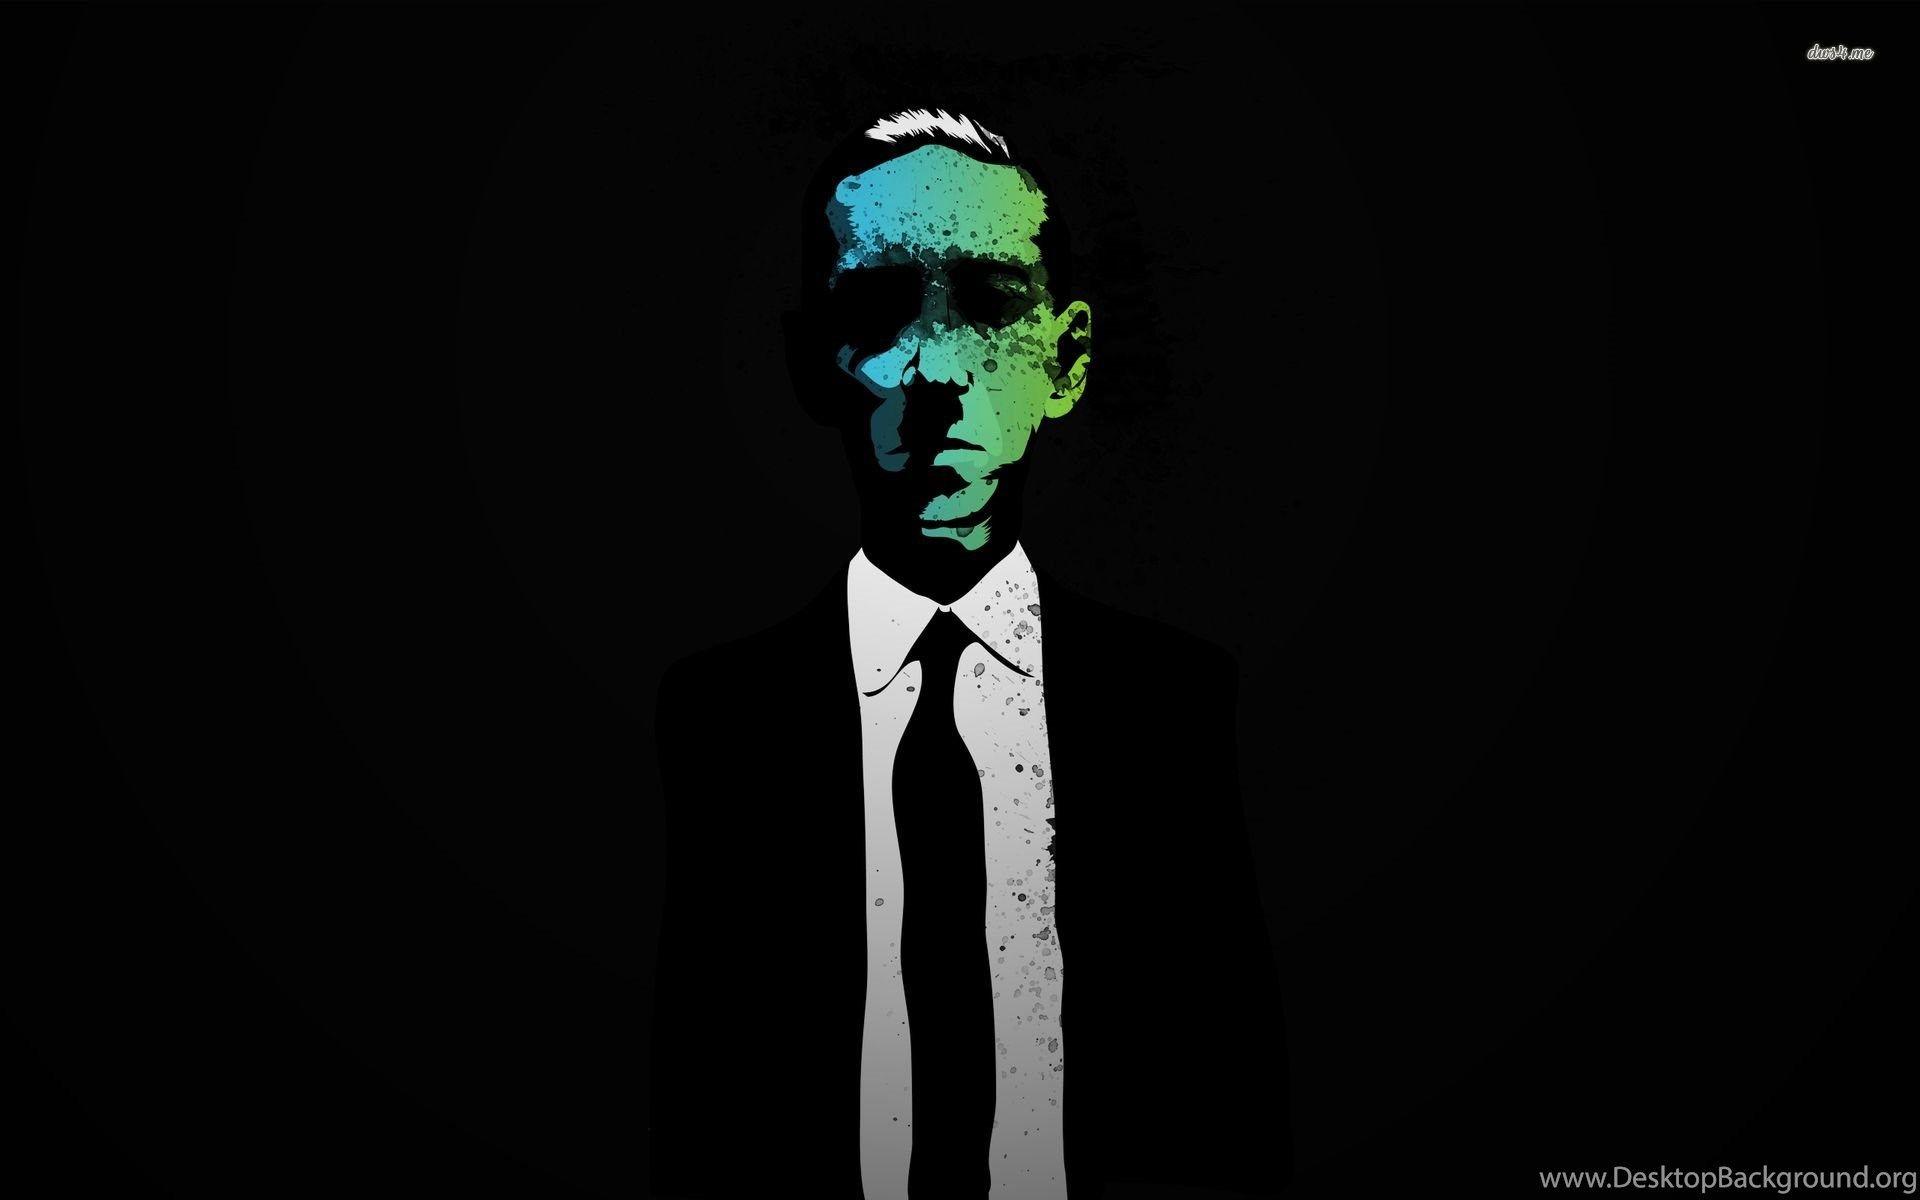 Cthulhu Hp Lovecraft Wallpaper Desktop Background